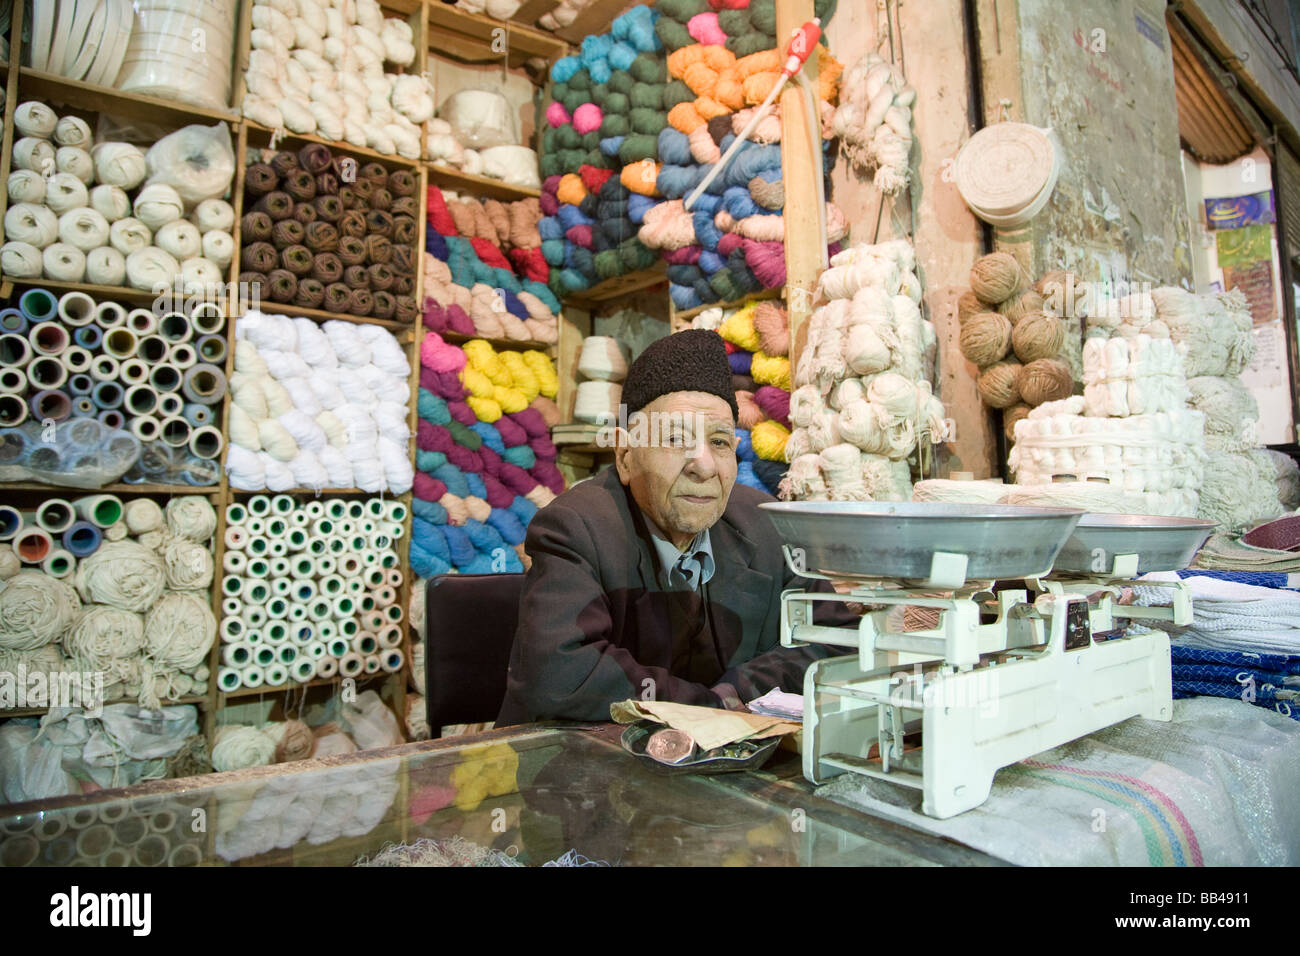 Cotton and wool salesman in Esfahan bazaar in Iran. Stock Photo